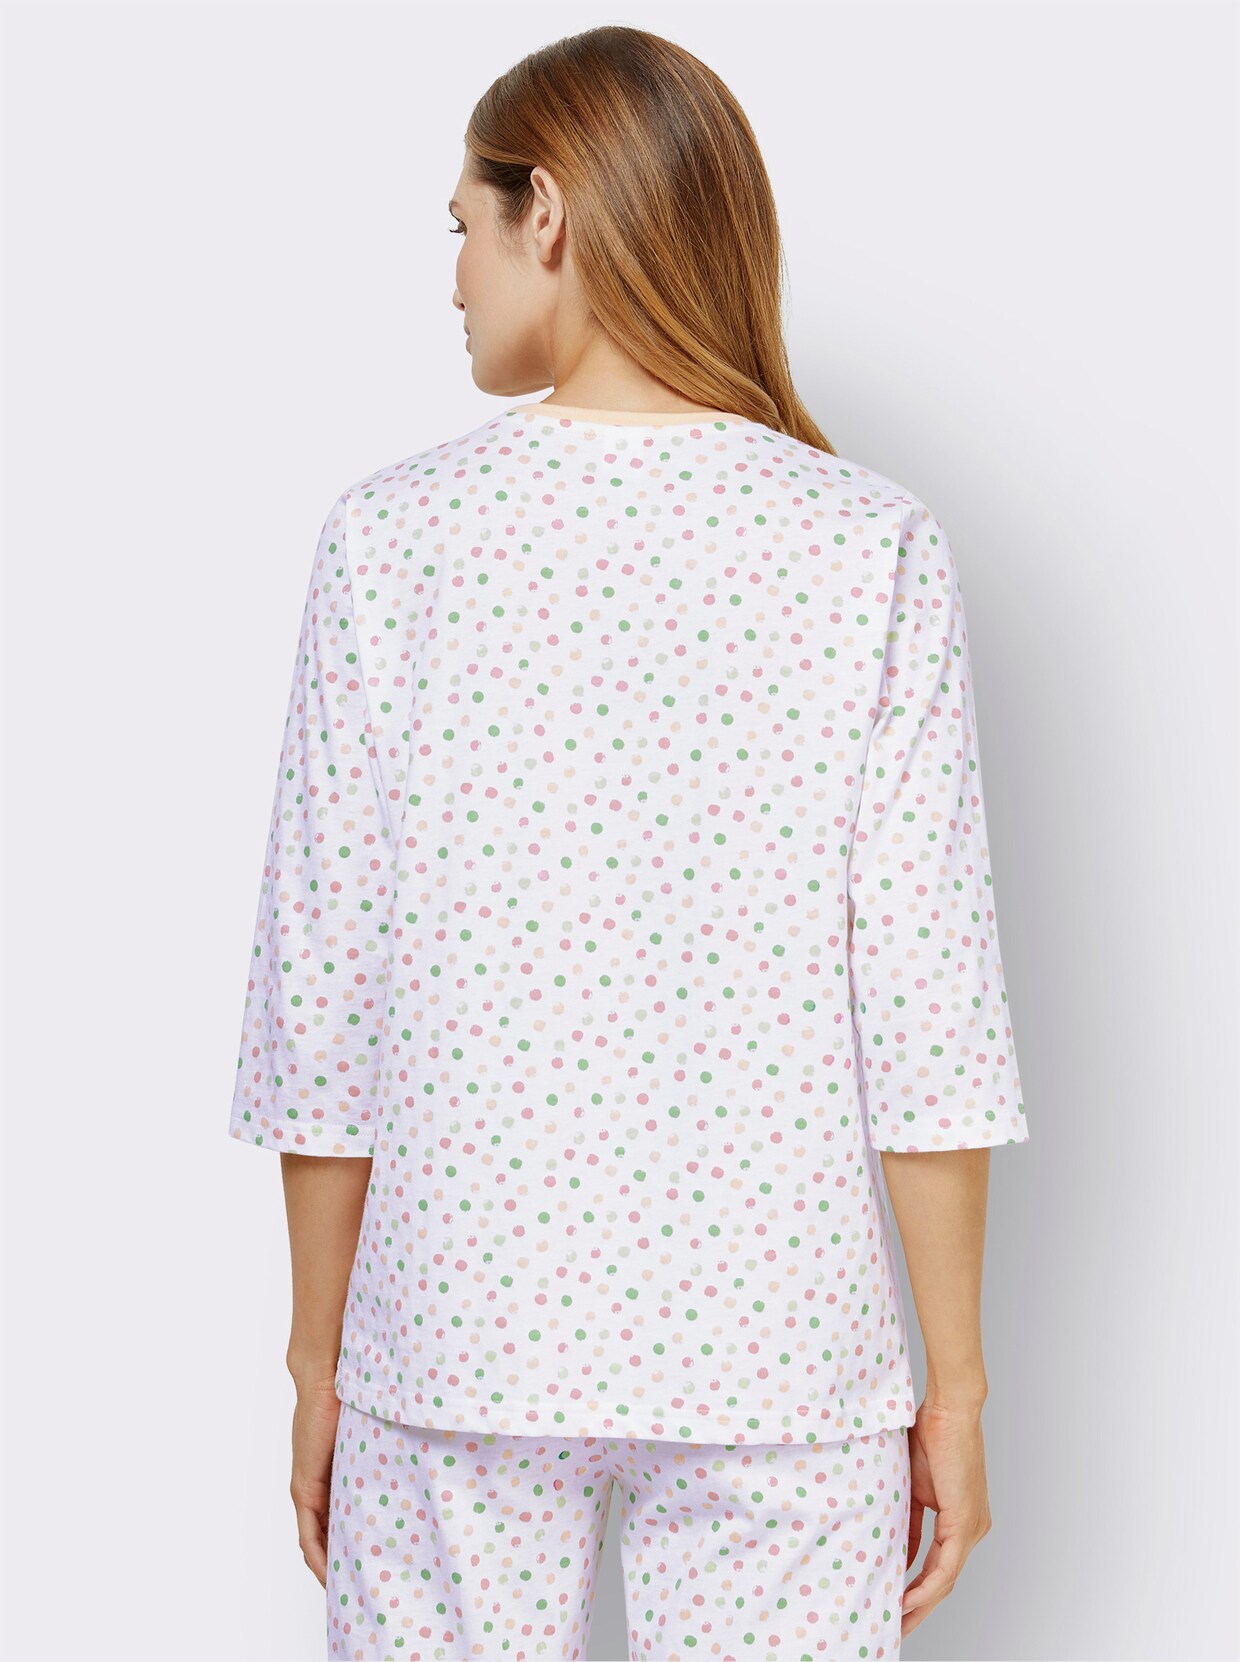 wäschepur Schlafanzug-Shirt - weiß-gepunktet